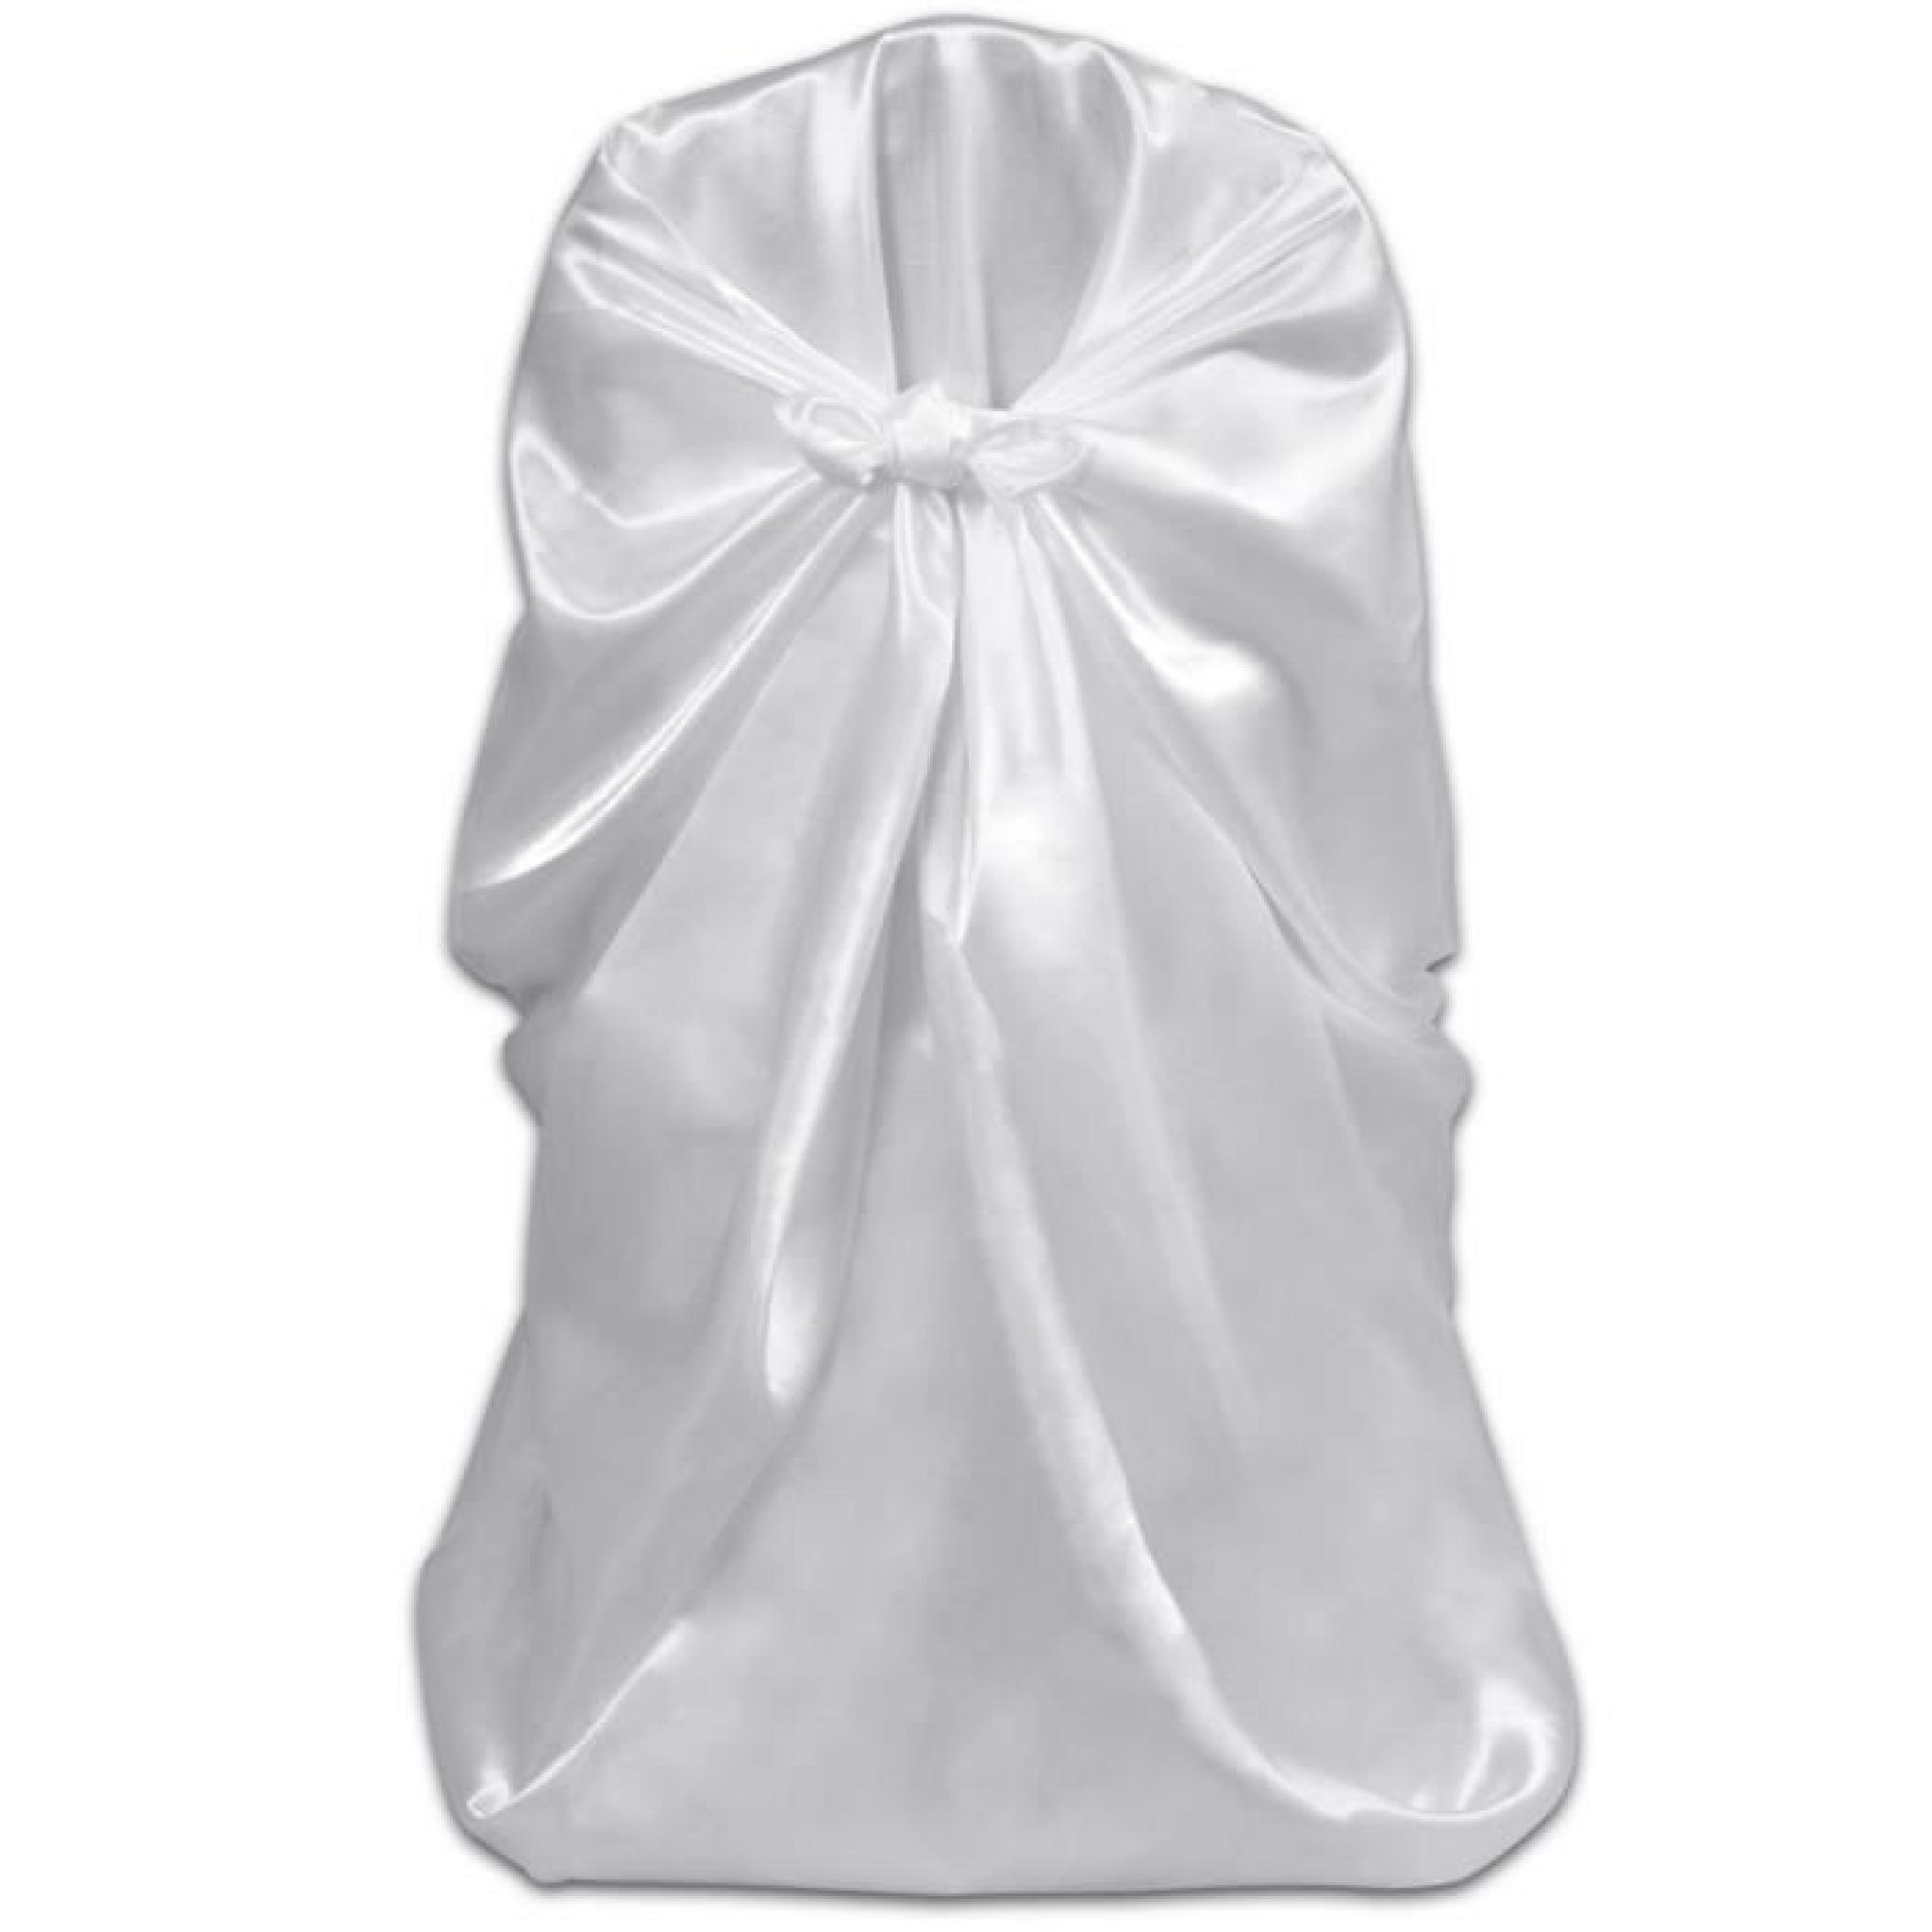 Magnifique Housse de chaise blanche pour le banquet de mariage 6 pieces